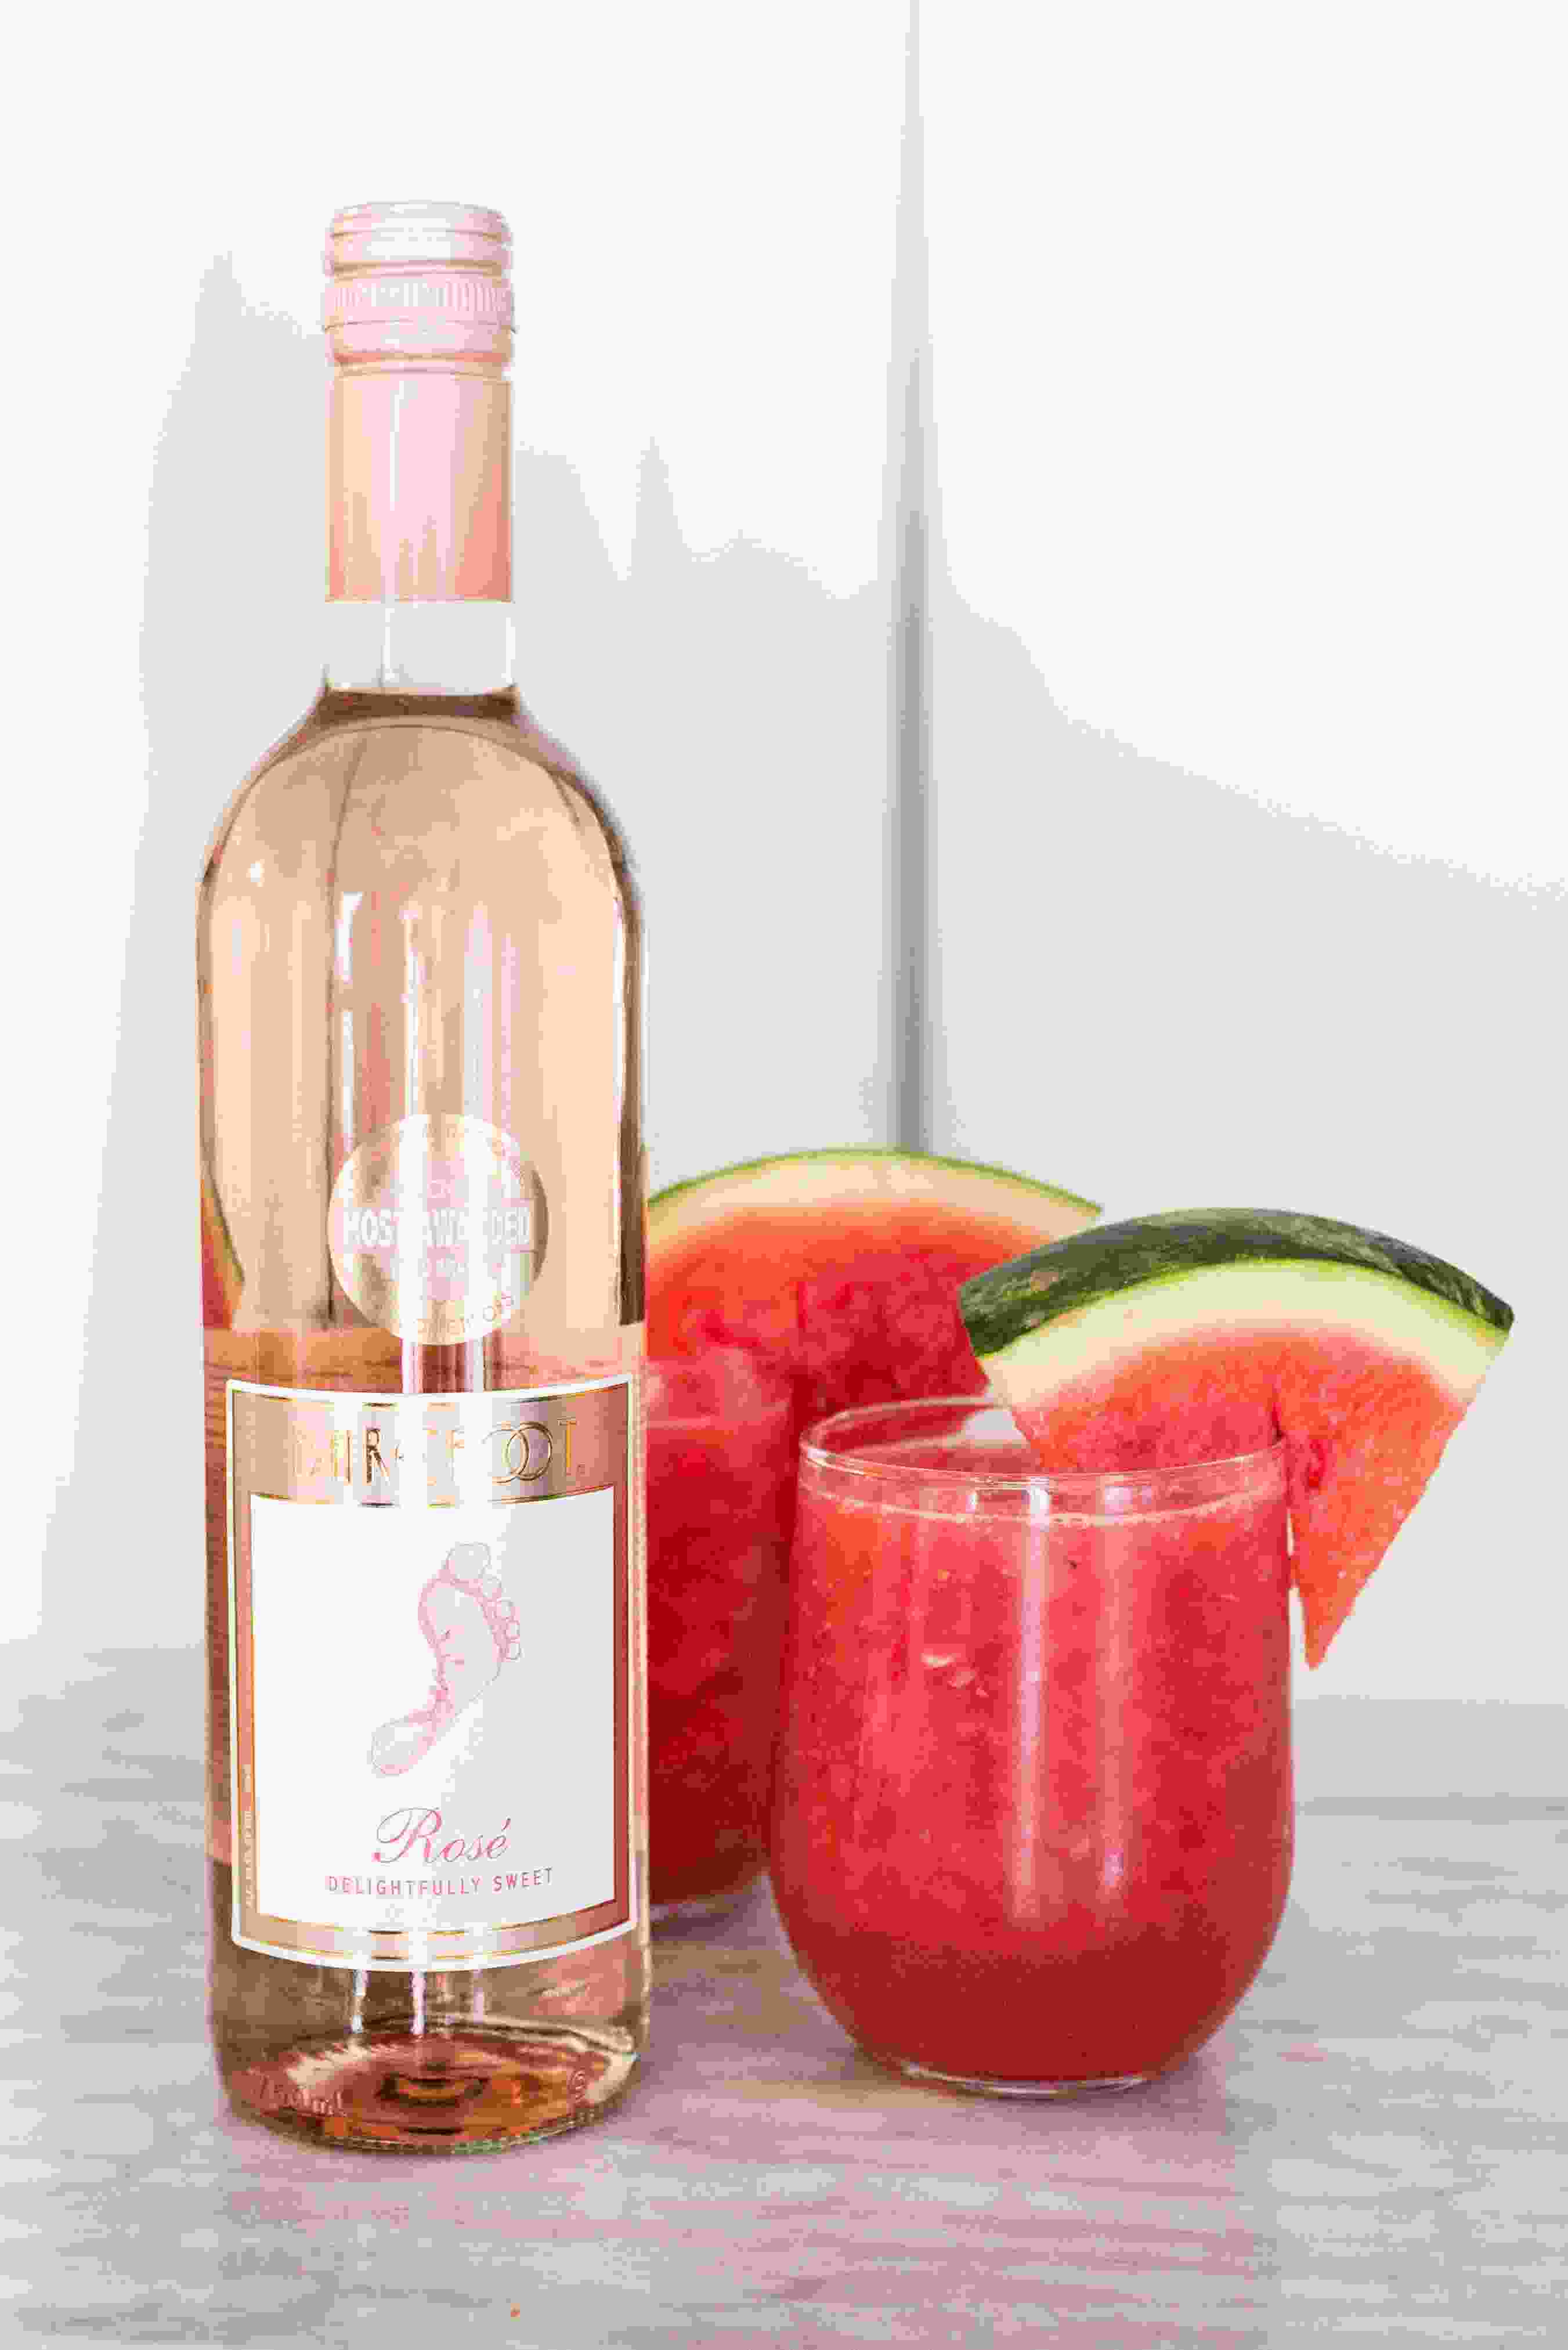 Wassermelone Wein Slushie Rezept Rosewein Sommergetränk Ideen gesund